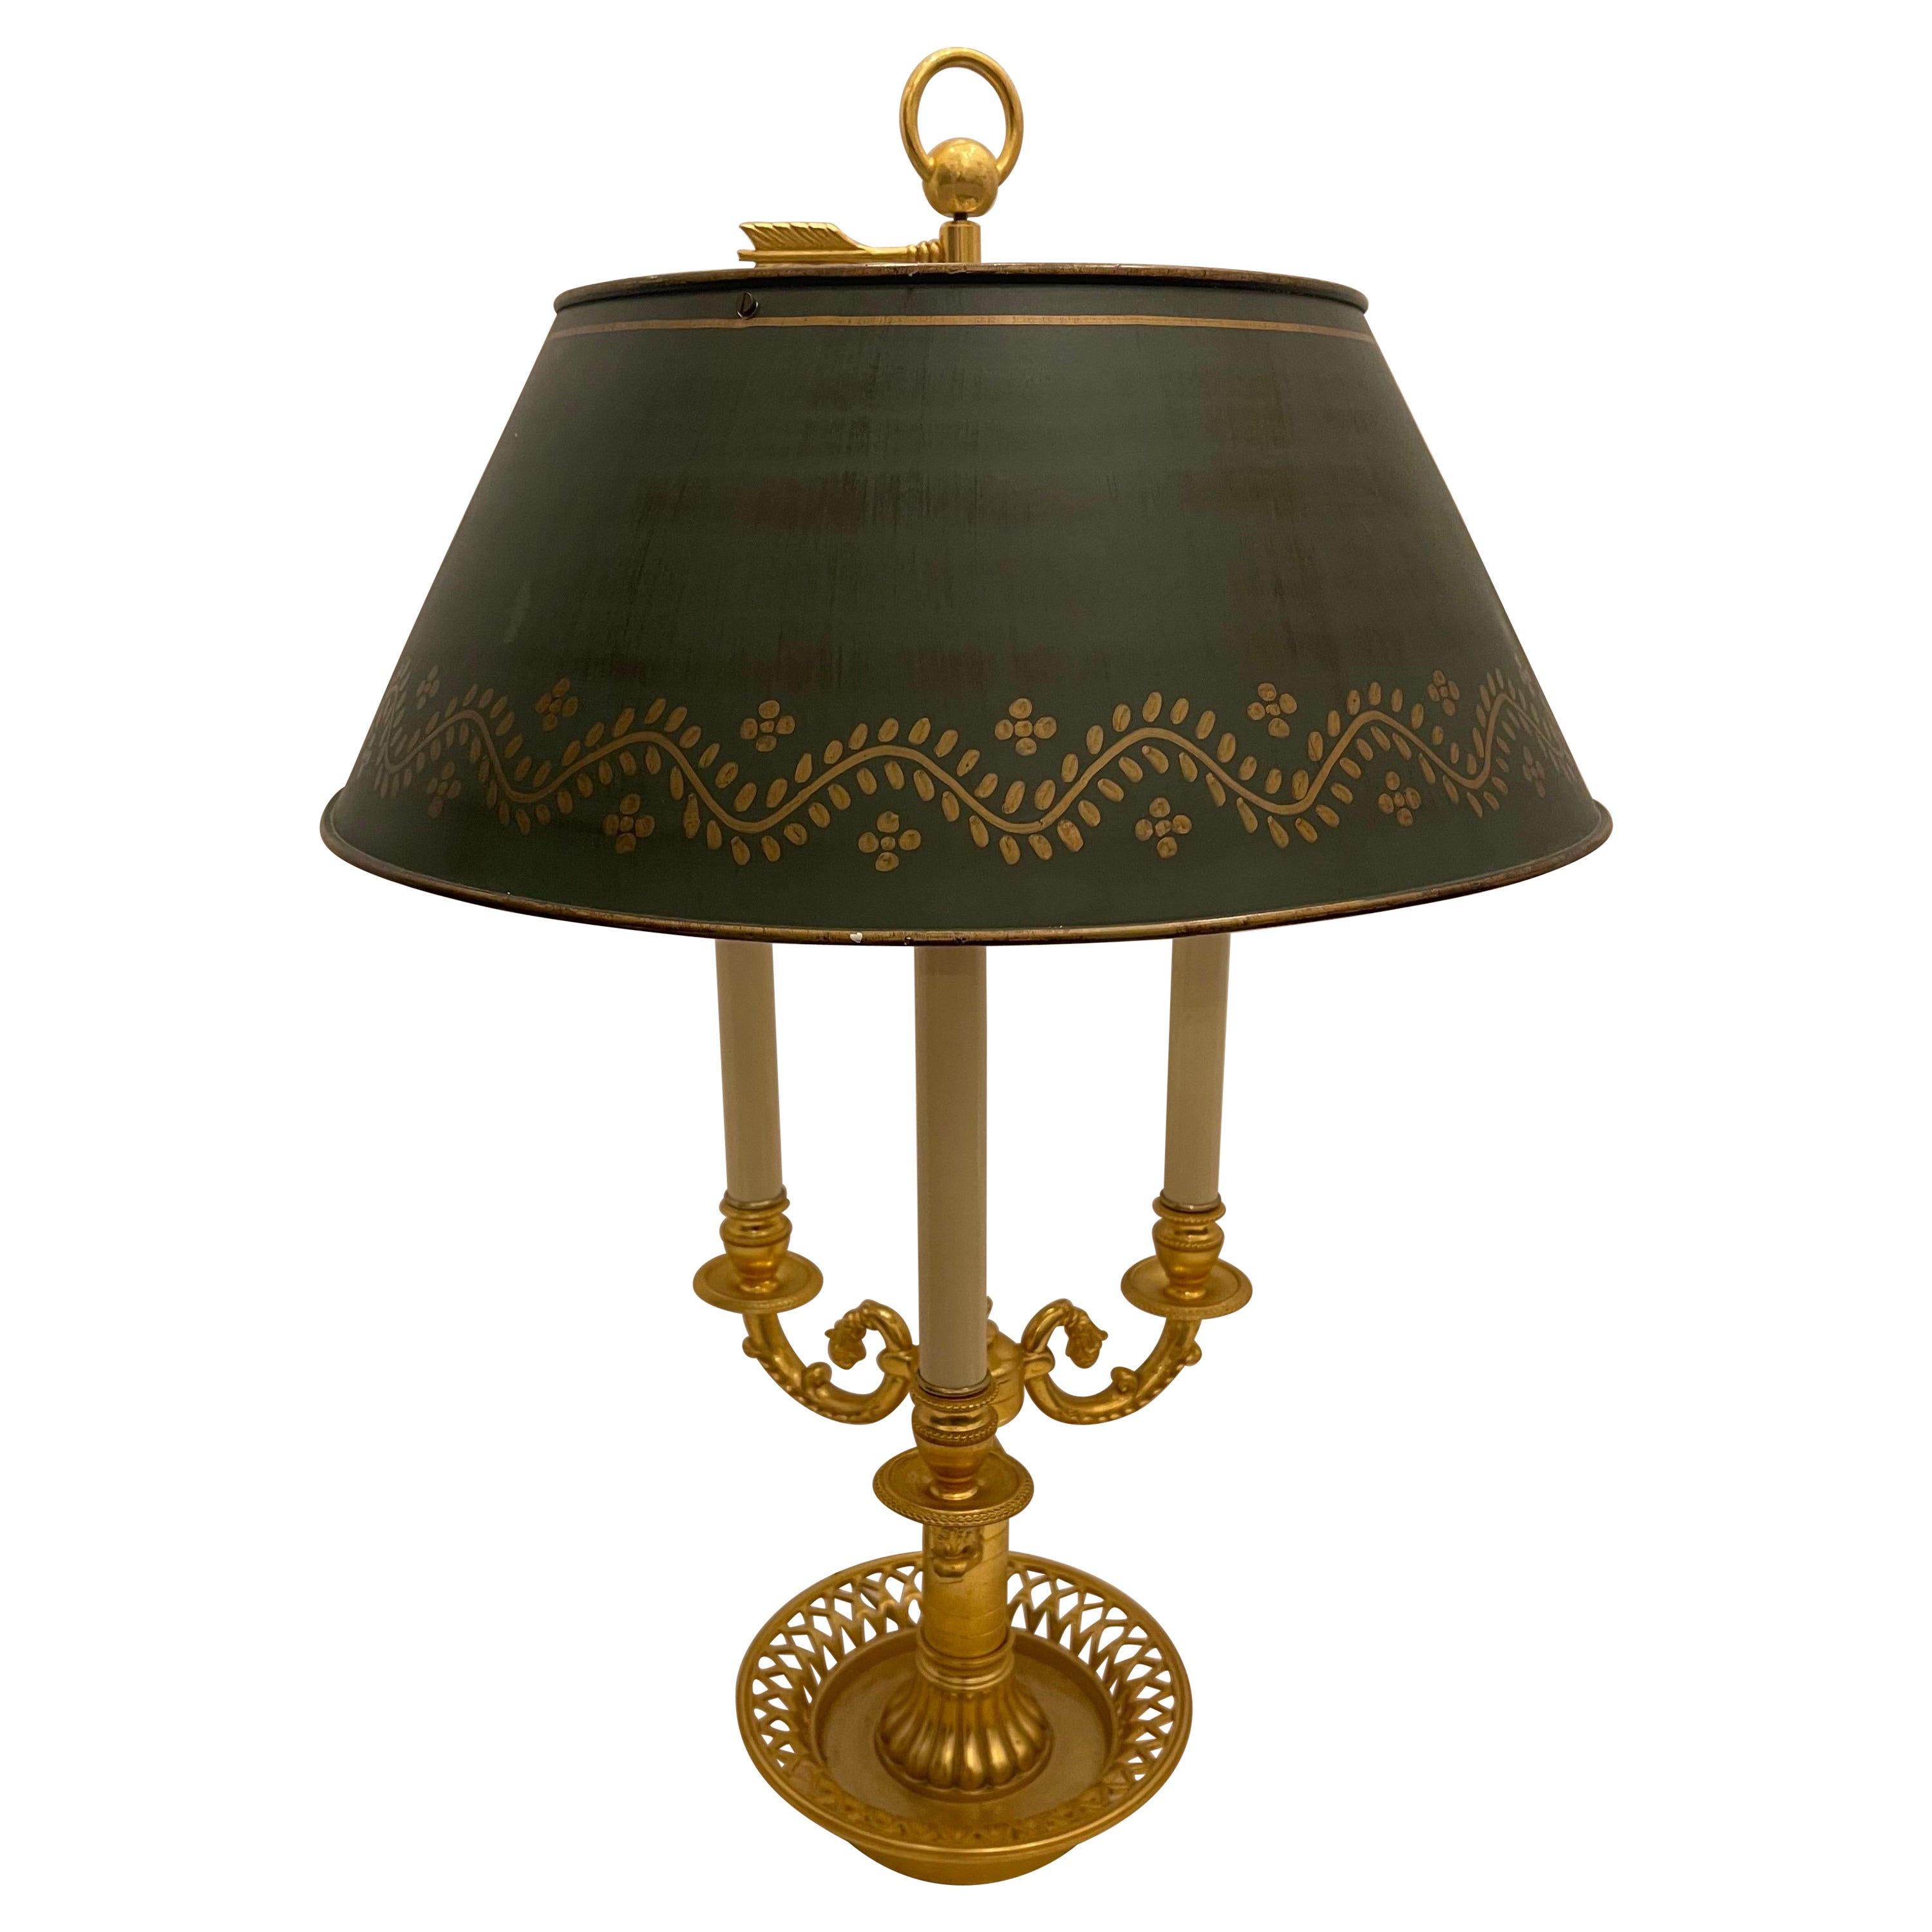 Drei Kandelaber Bouillotte-Lampe, französisches Empire, neoklassizistische Bronze, Tole-Schirm